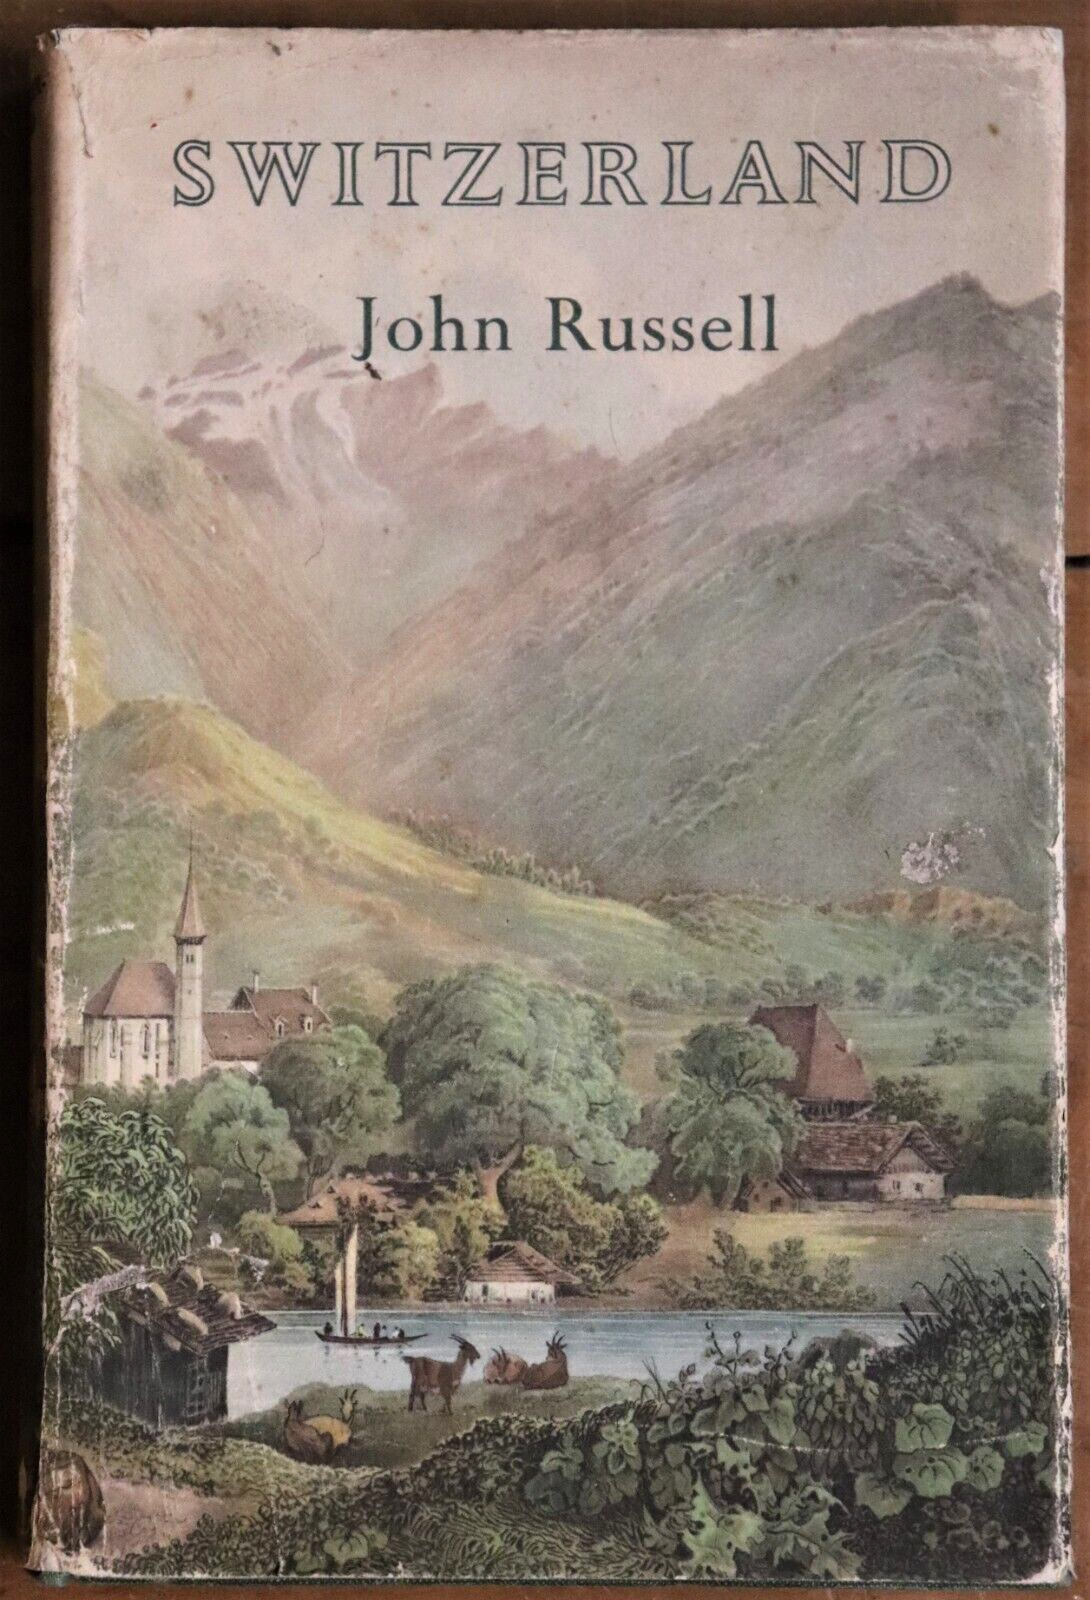 Switzerland by John Russell - BT Batsford - 1950 - Antique Travel Book